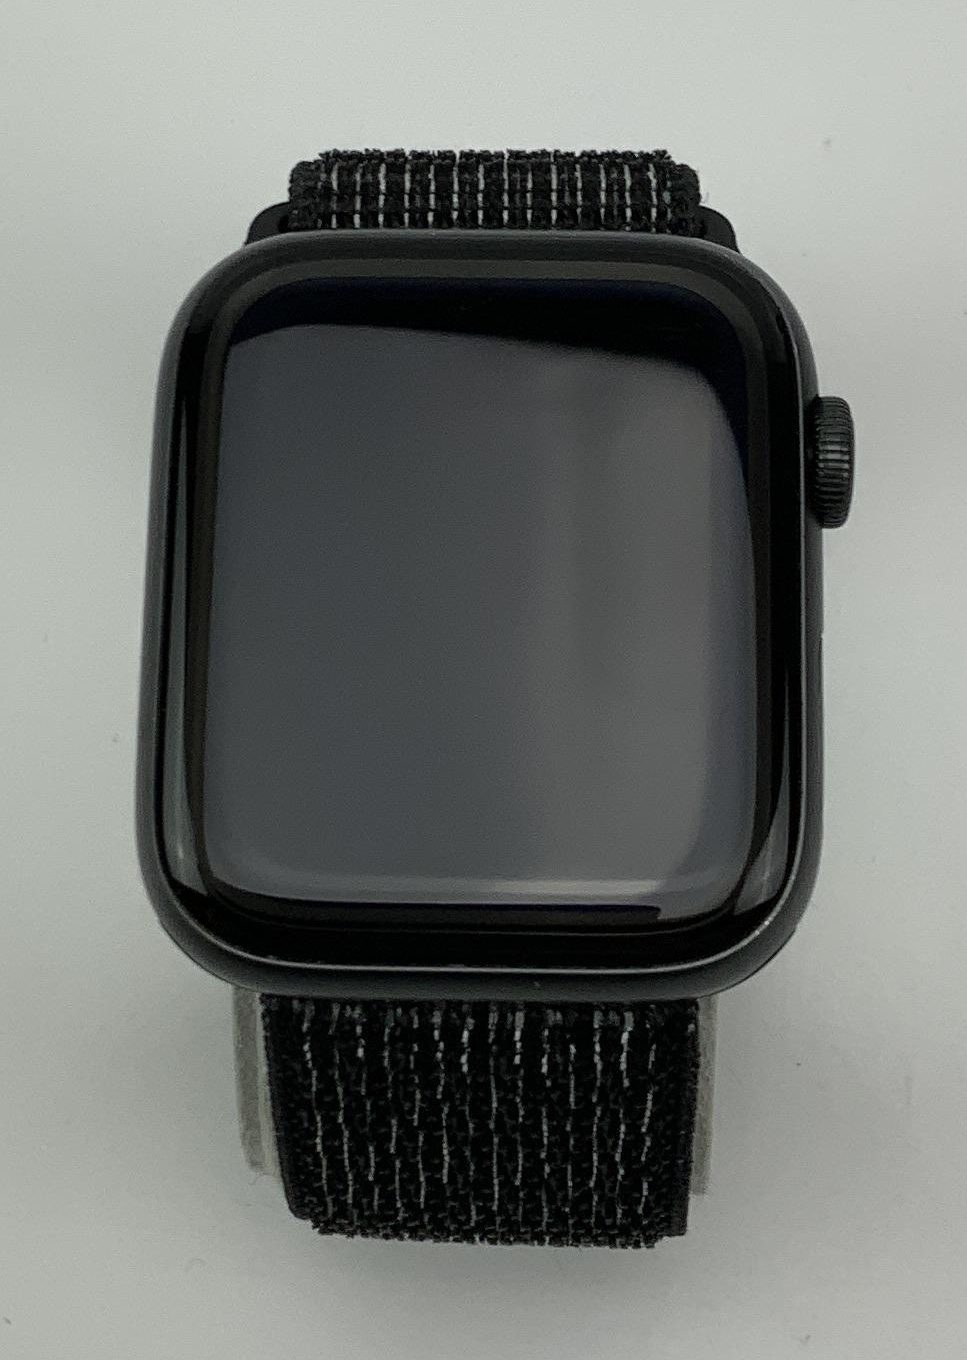 Watch Series 5 Aluminum (44mm), Space Gray, imagen 1